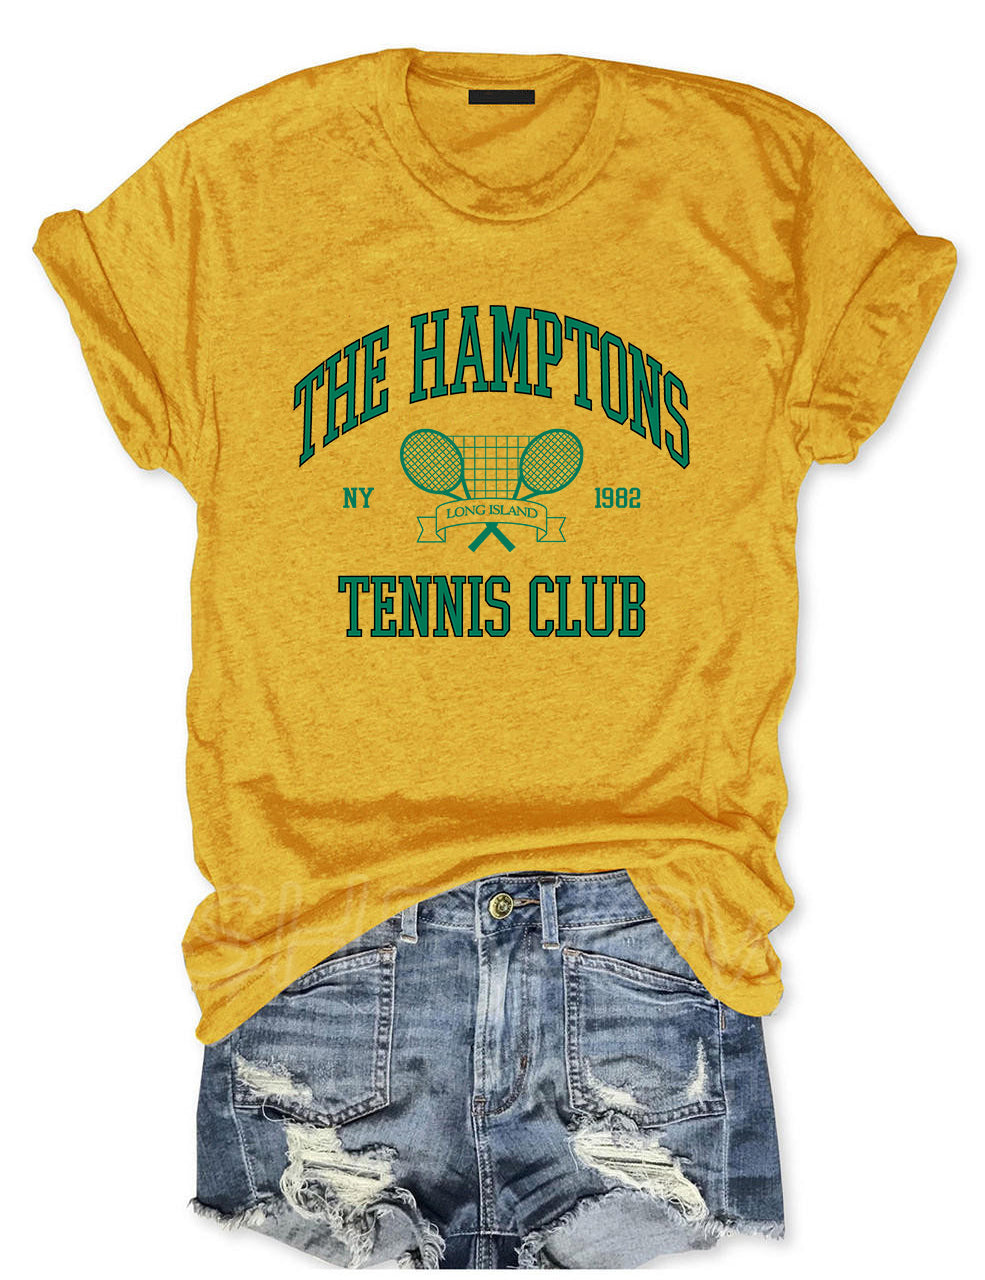 The Hamptons Tennis Club T-shirt